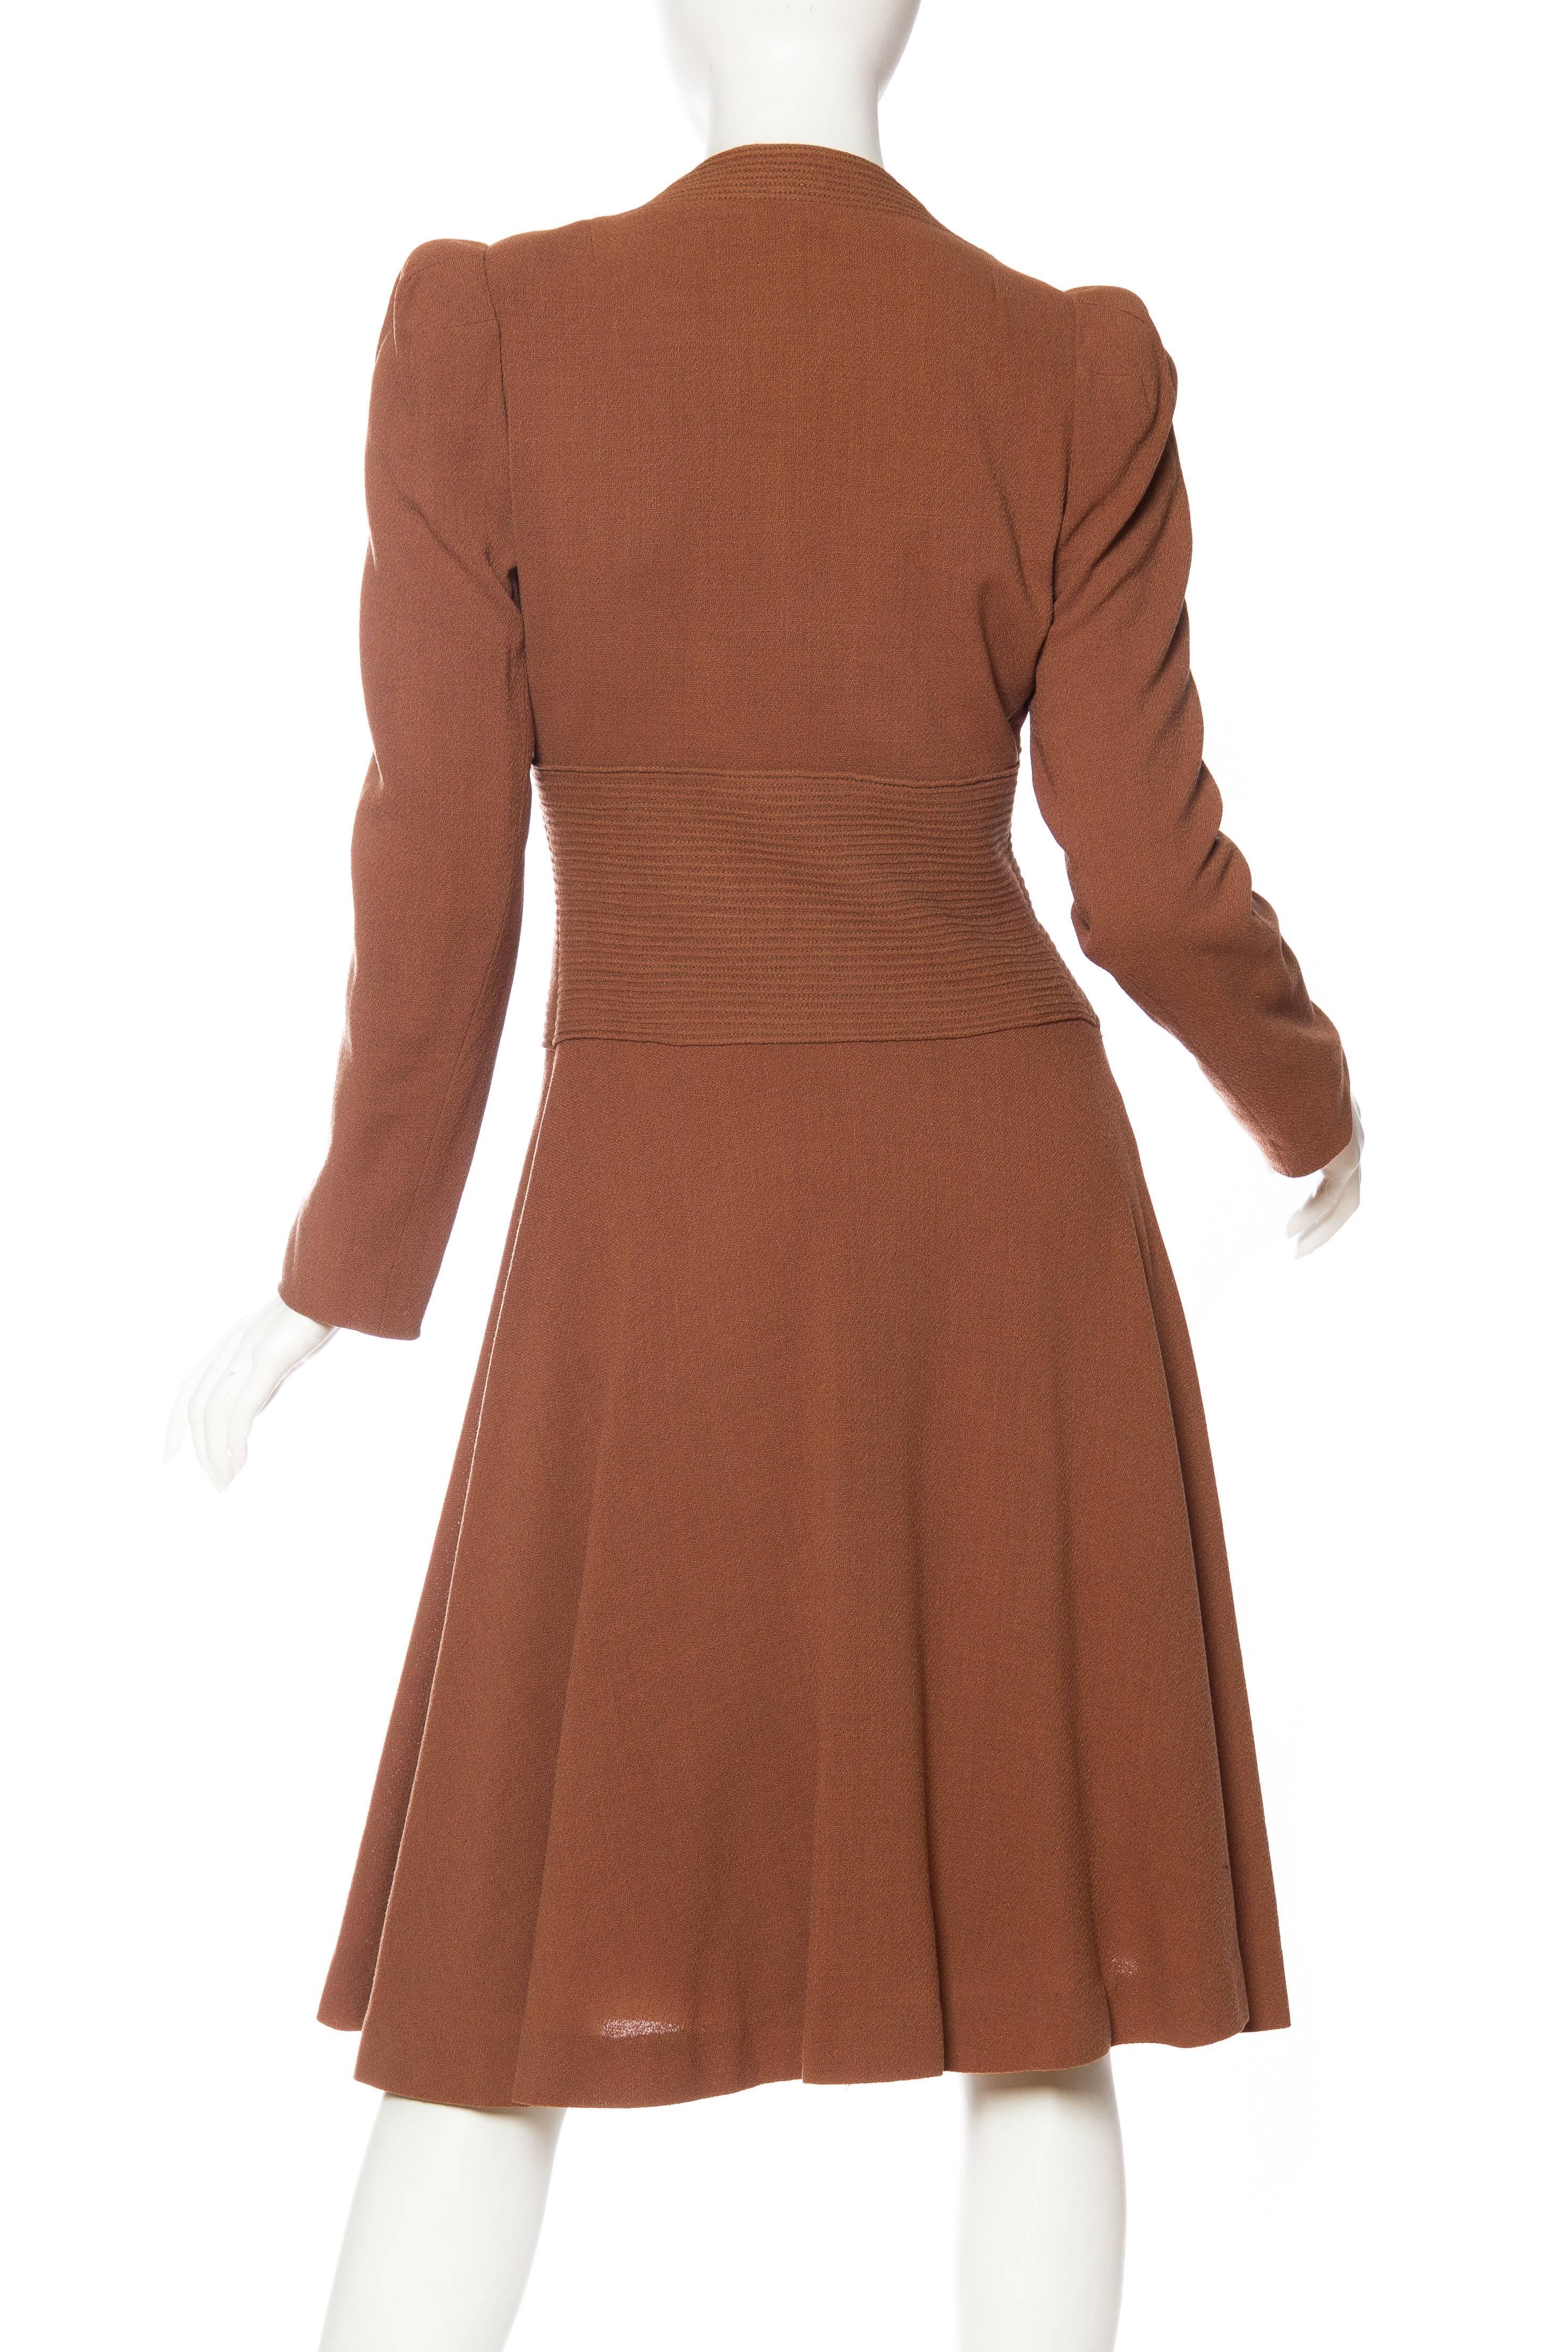 1930s Biba Style Wool Coat  2